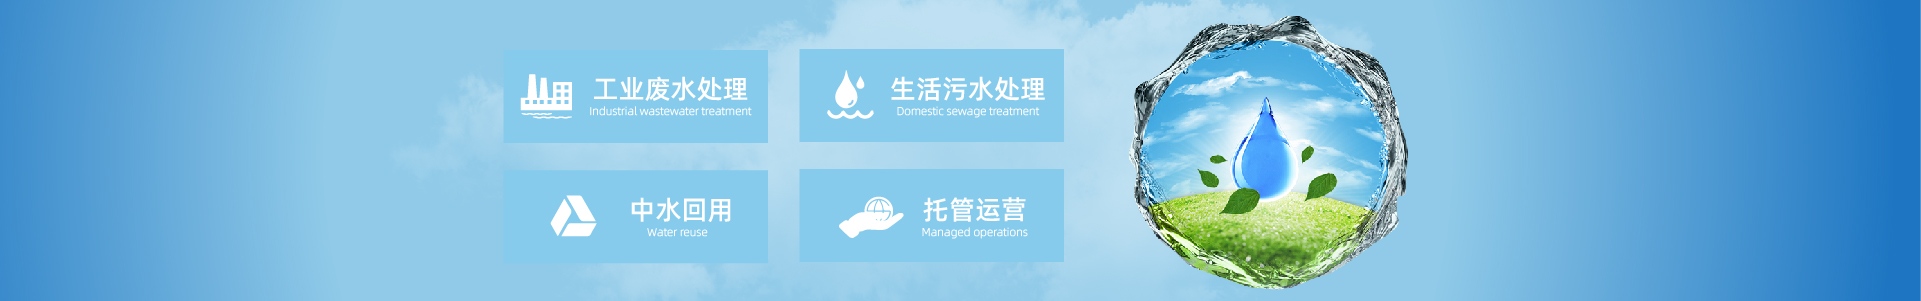 公司荣誉-污水处理设备,一体化污水处理设备,工业废水处理,leyuapp